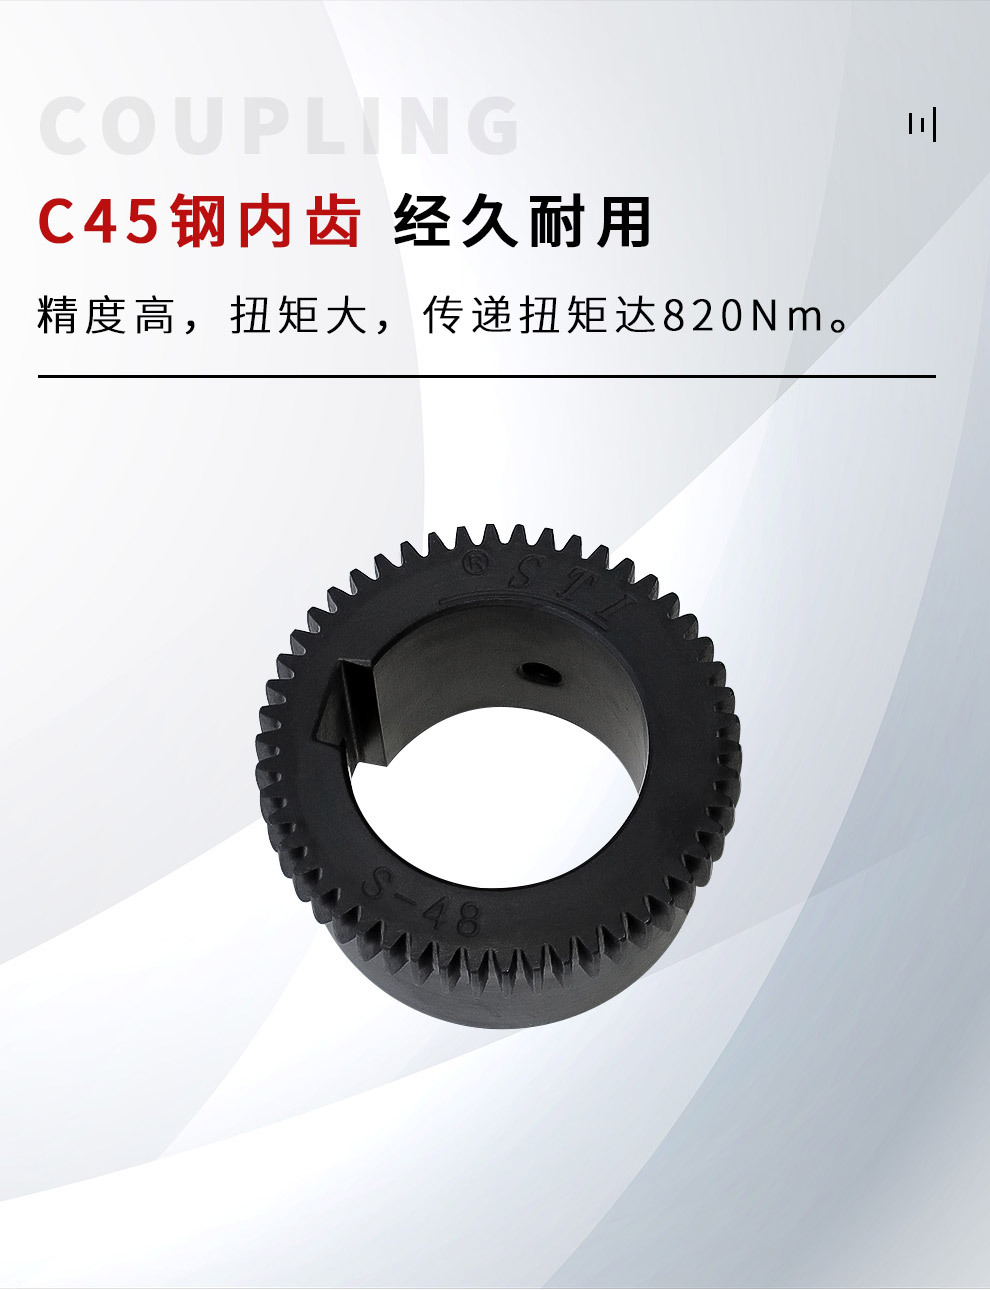 STI牌中国产 高品质成型孔全套 S-55H内齿型联轴器弹性联轴器示例图6